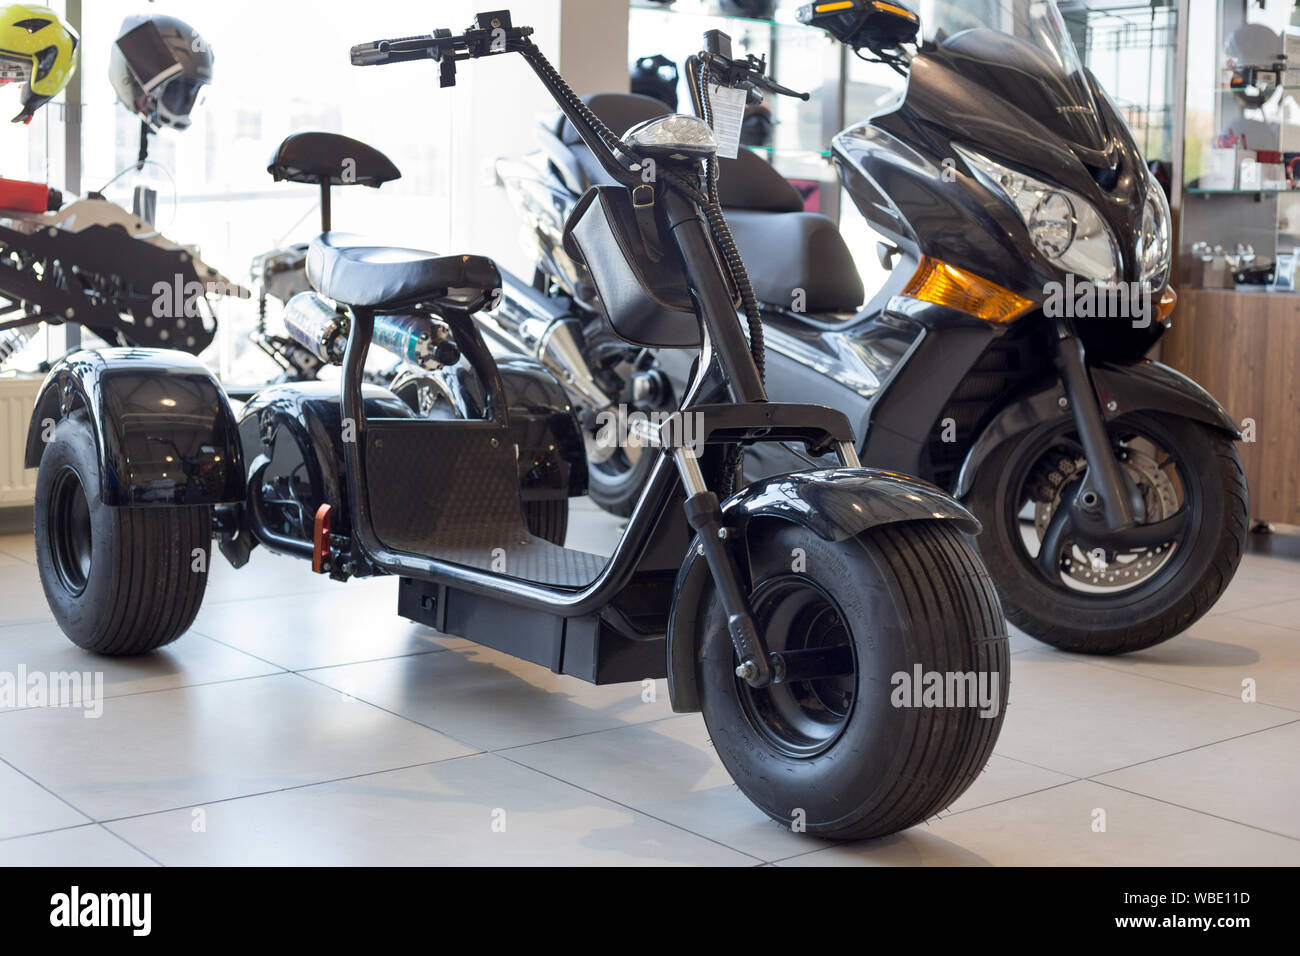 Rusia, Izhevsk - Agosto 23, 2019: motocicleta Yamaha shop. Tres ruedas scooter eléctrico de movilidad está de pie sobre un showroom del concesionario. Ayudas de movilidad moderna Foto de stock